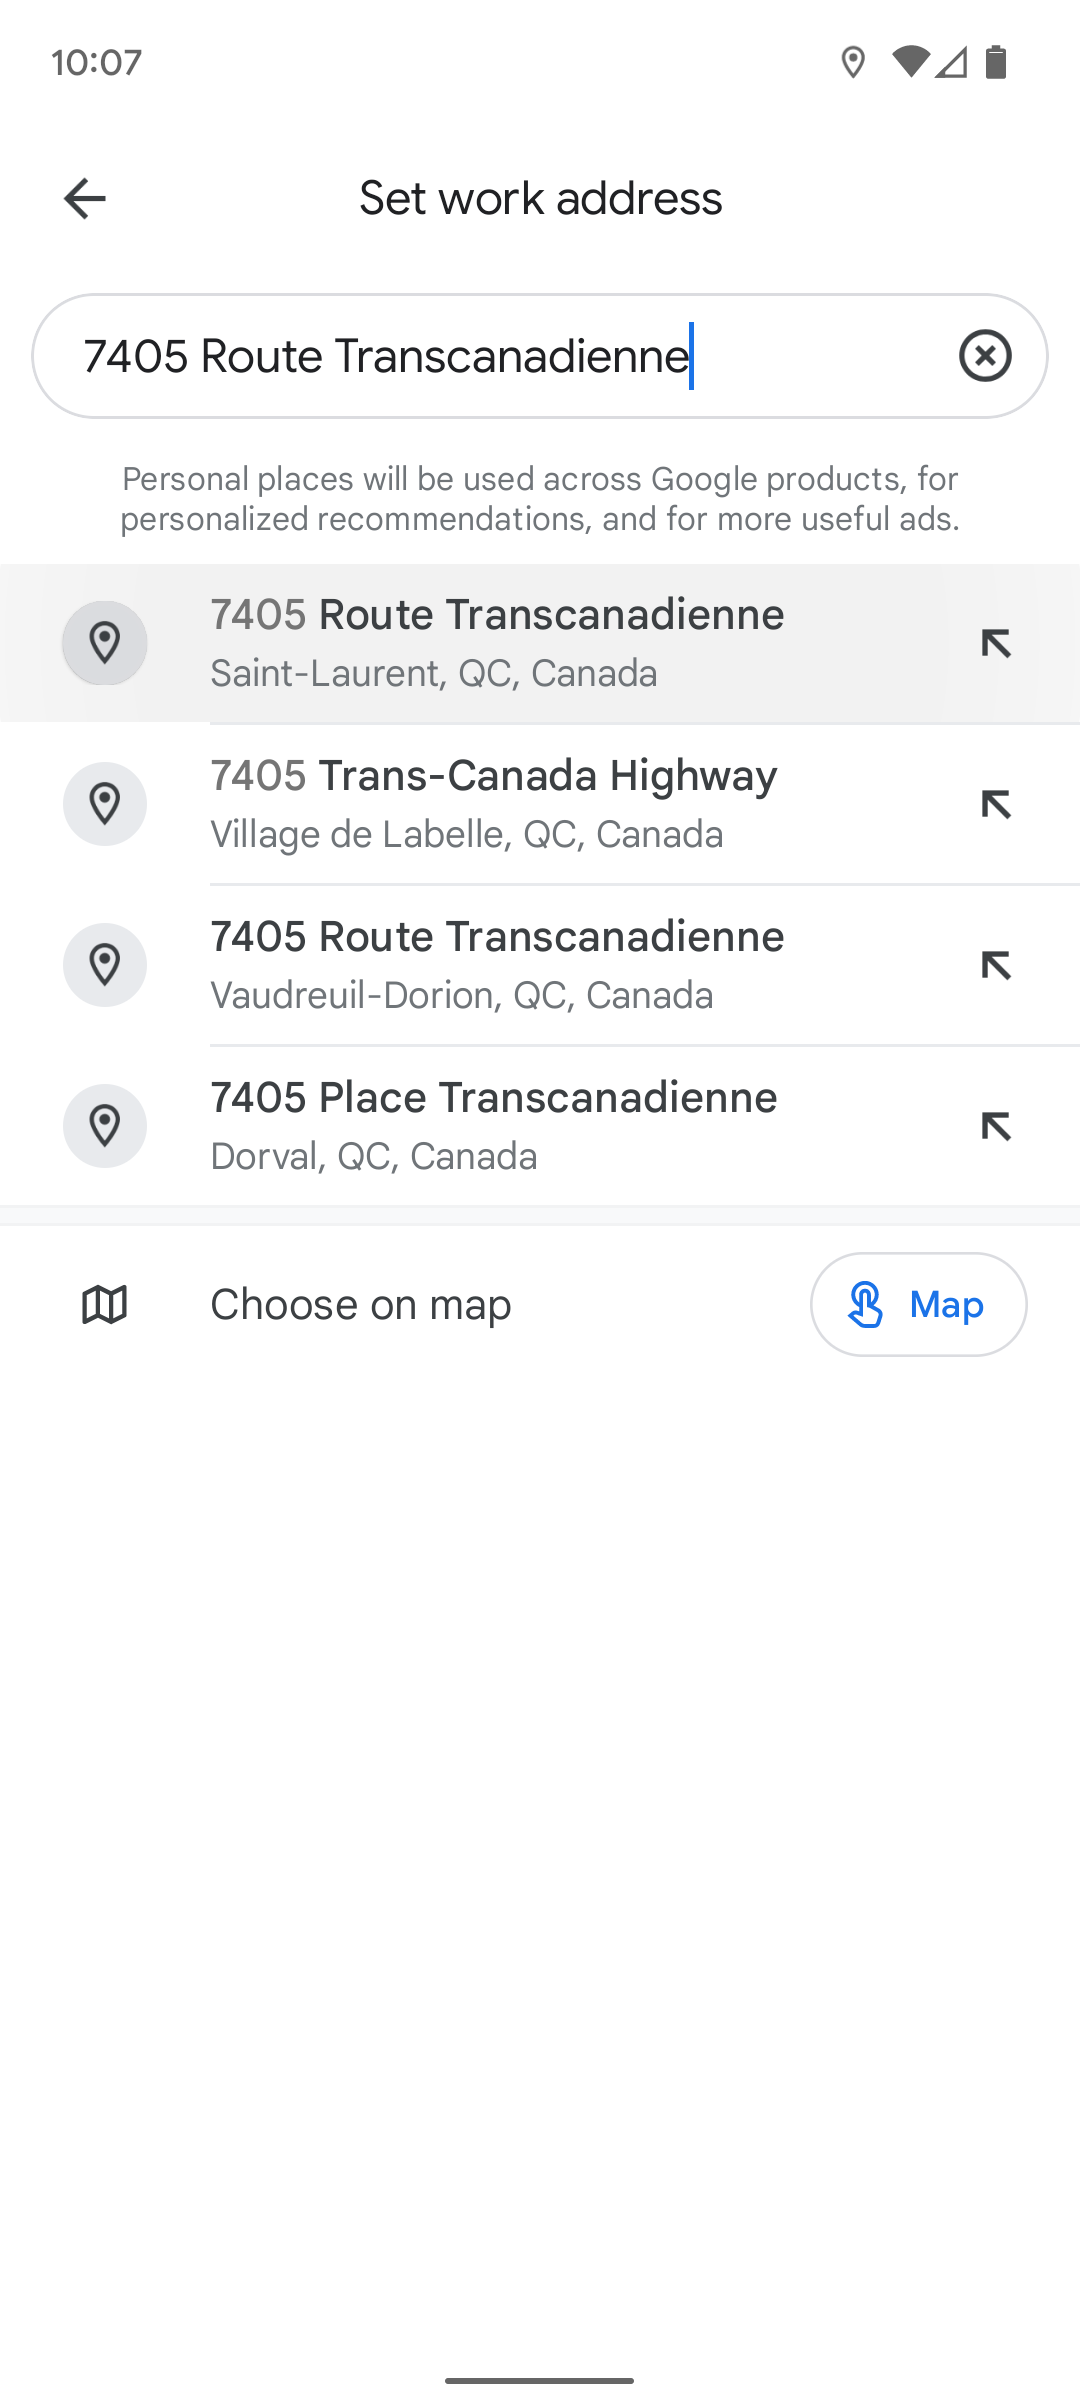 Menu do aplicativo móvel do Google Maps para definir seu endereço comercial.